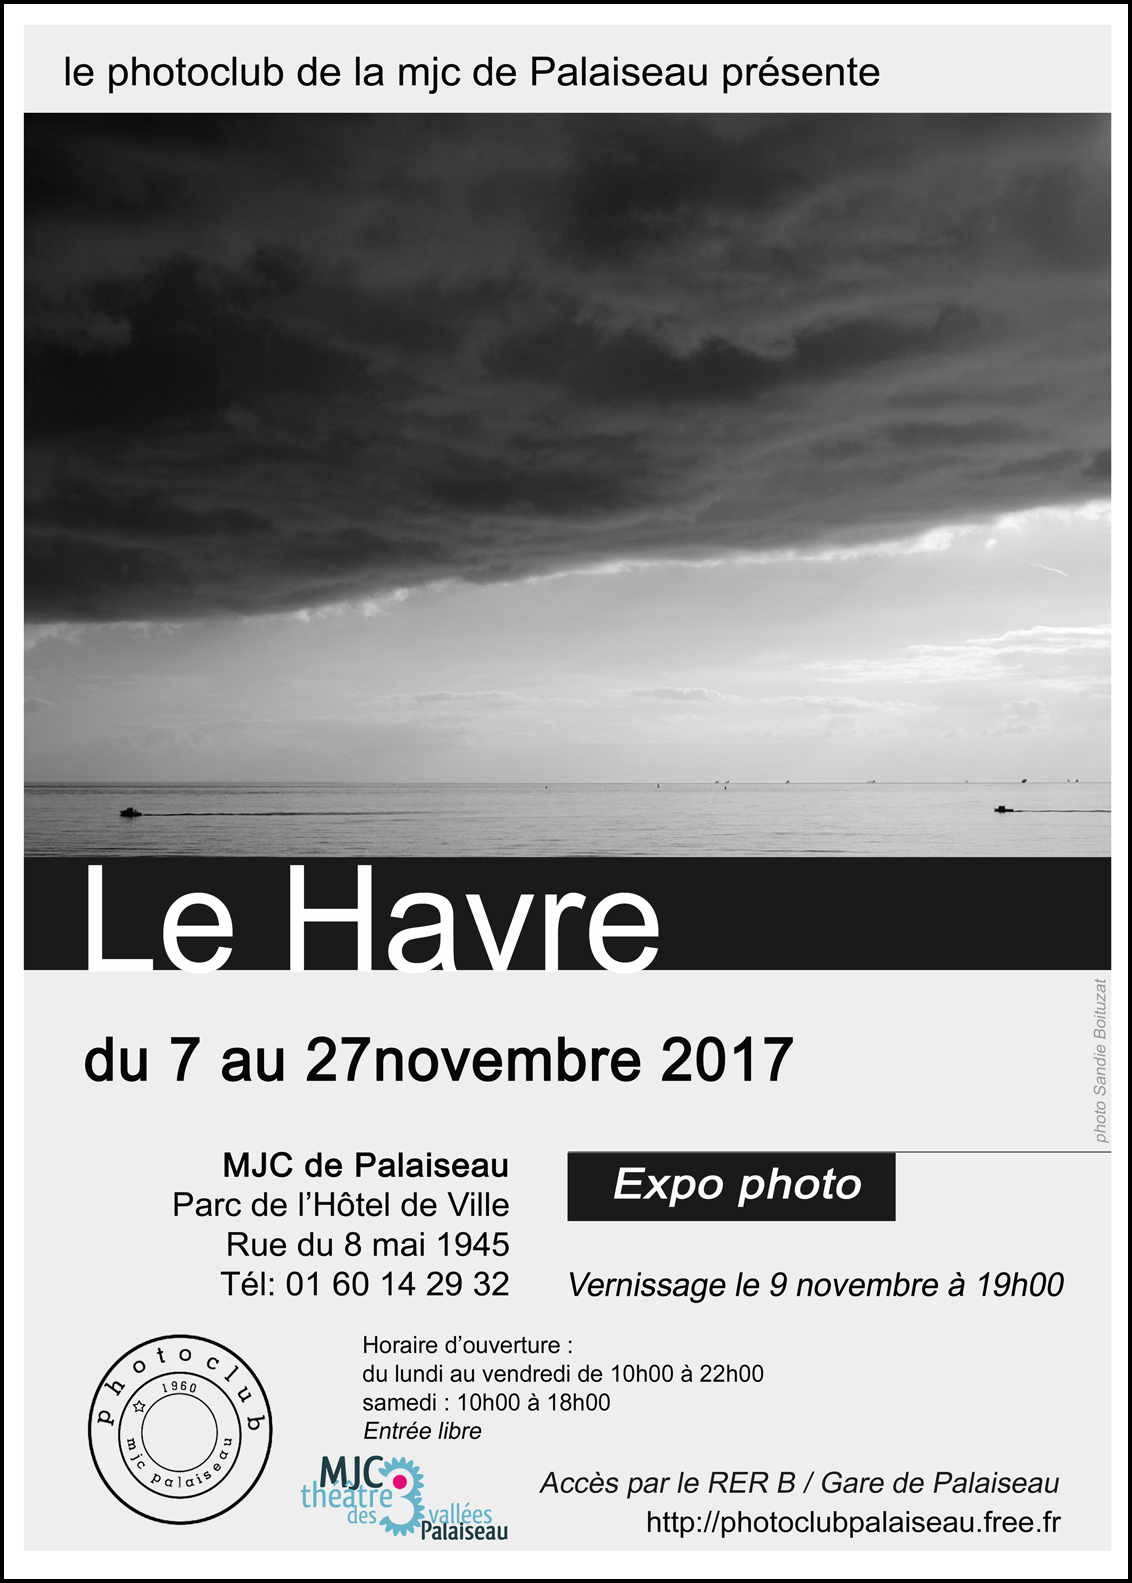 vernissage de l’expo photo  » Le Havre  » du Photoclub de la MJC de Palaiseau le jeudi 9 novembre à partir de 19h